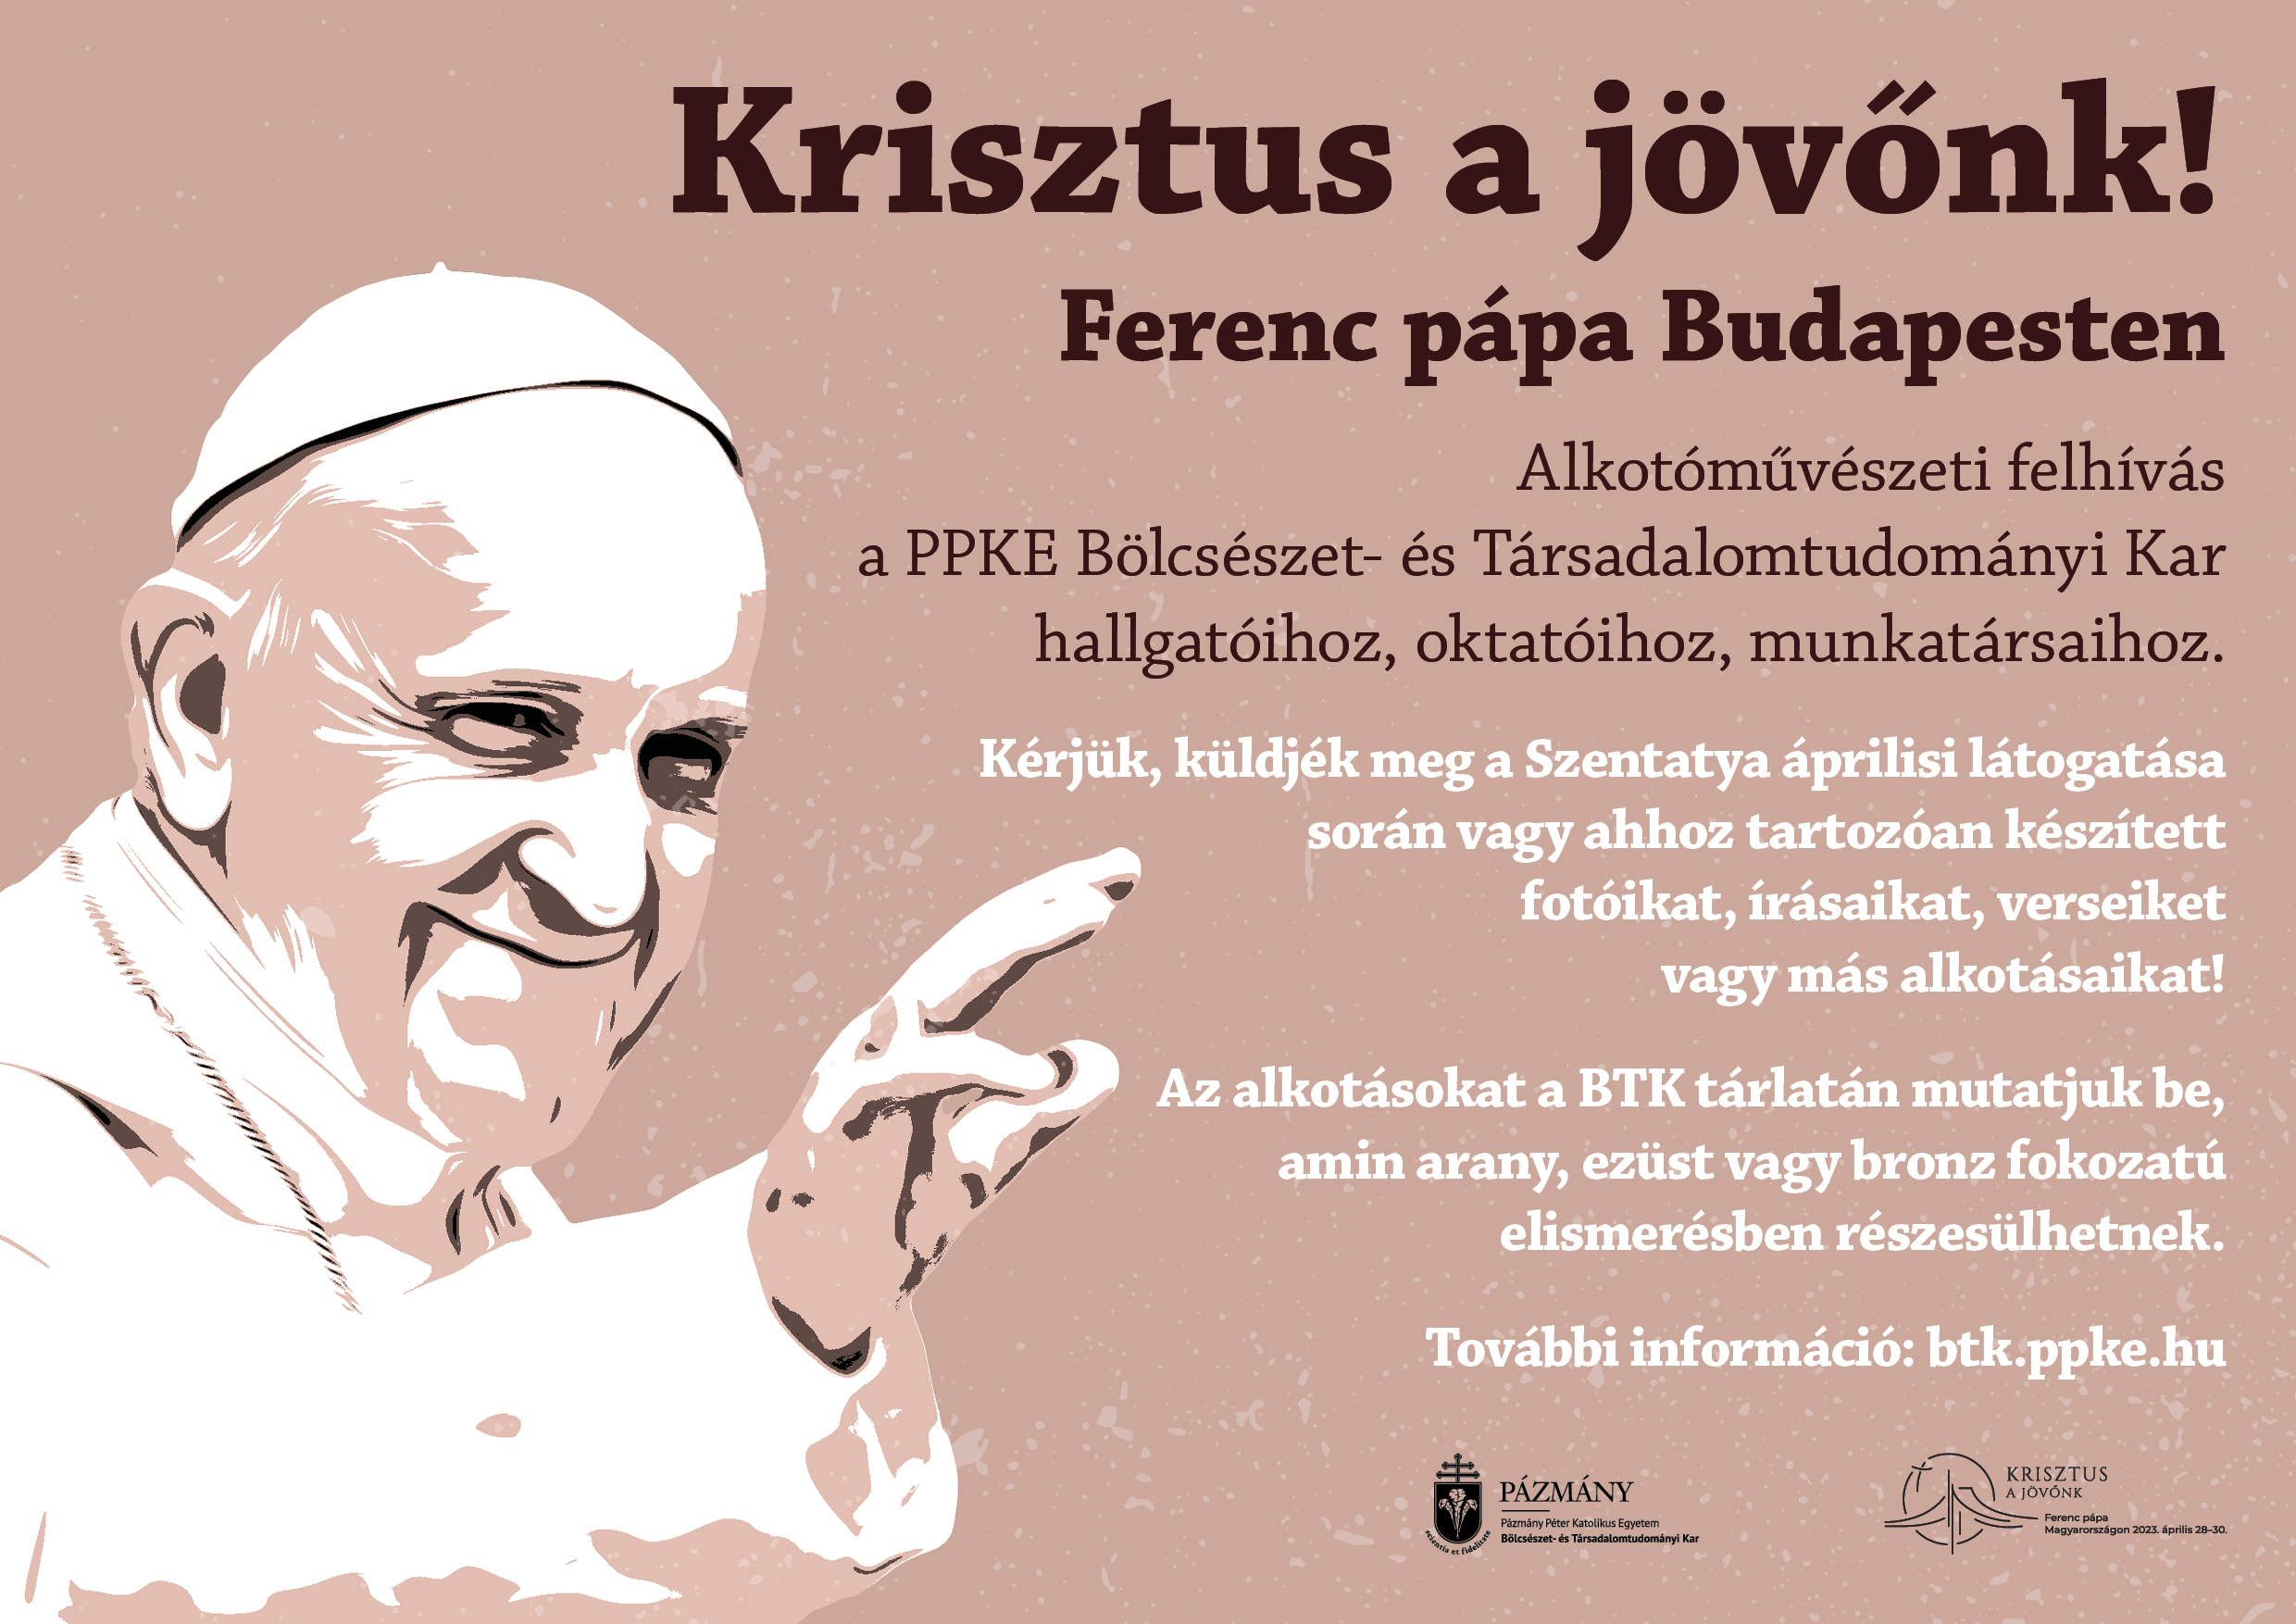 Krisztus a jövőnk! – Ferenc pápa Budapesten